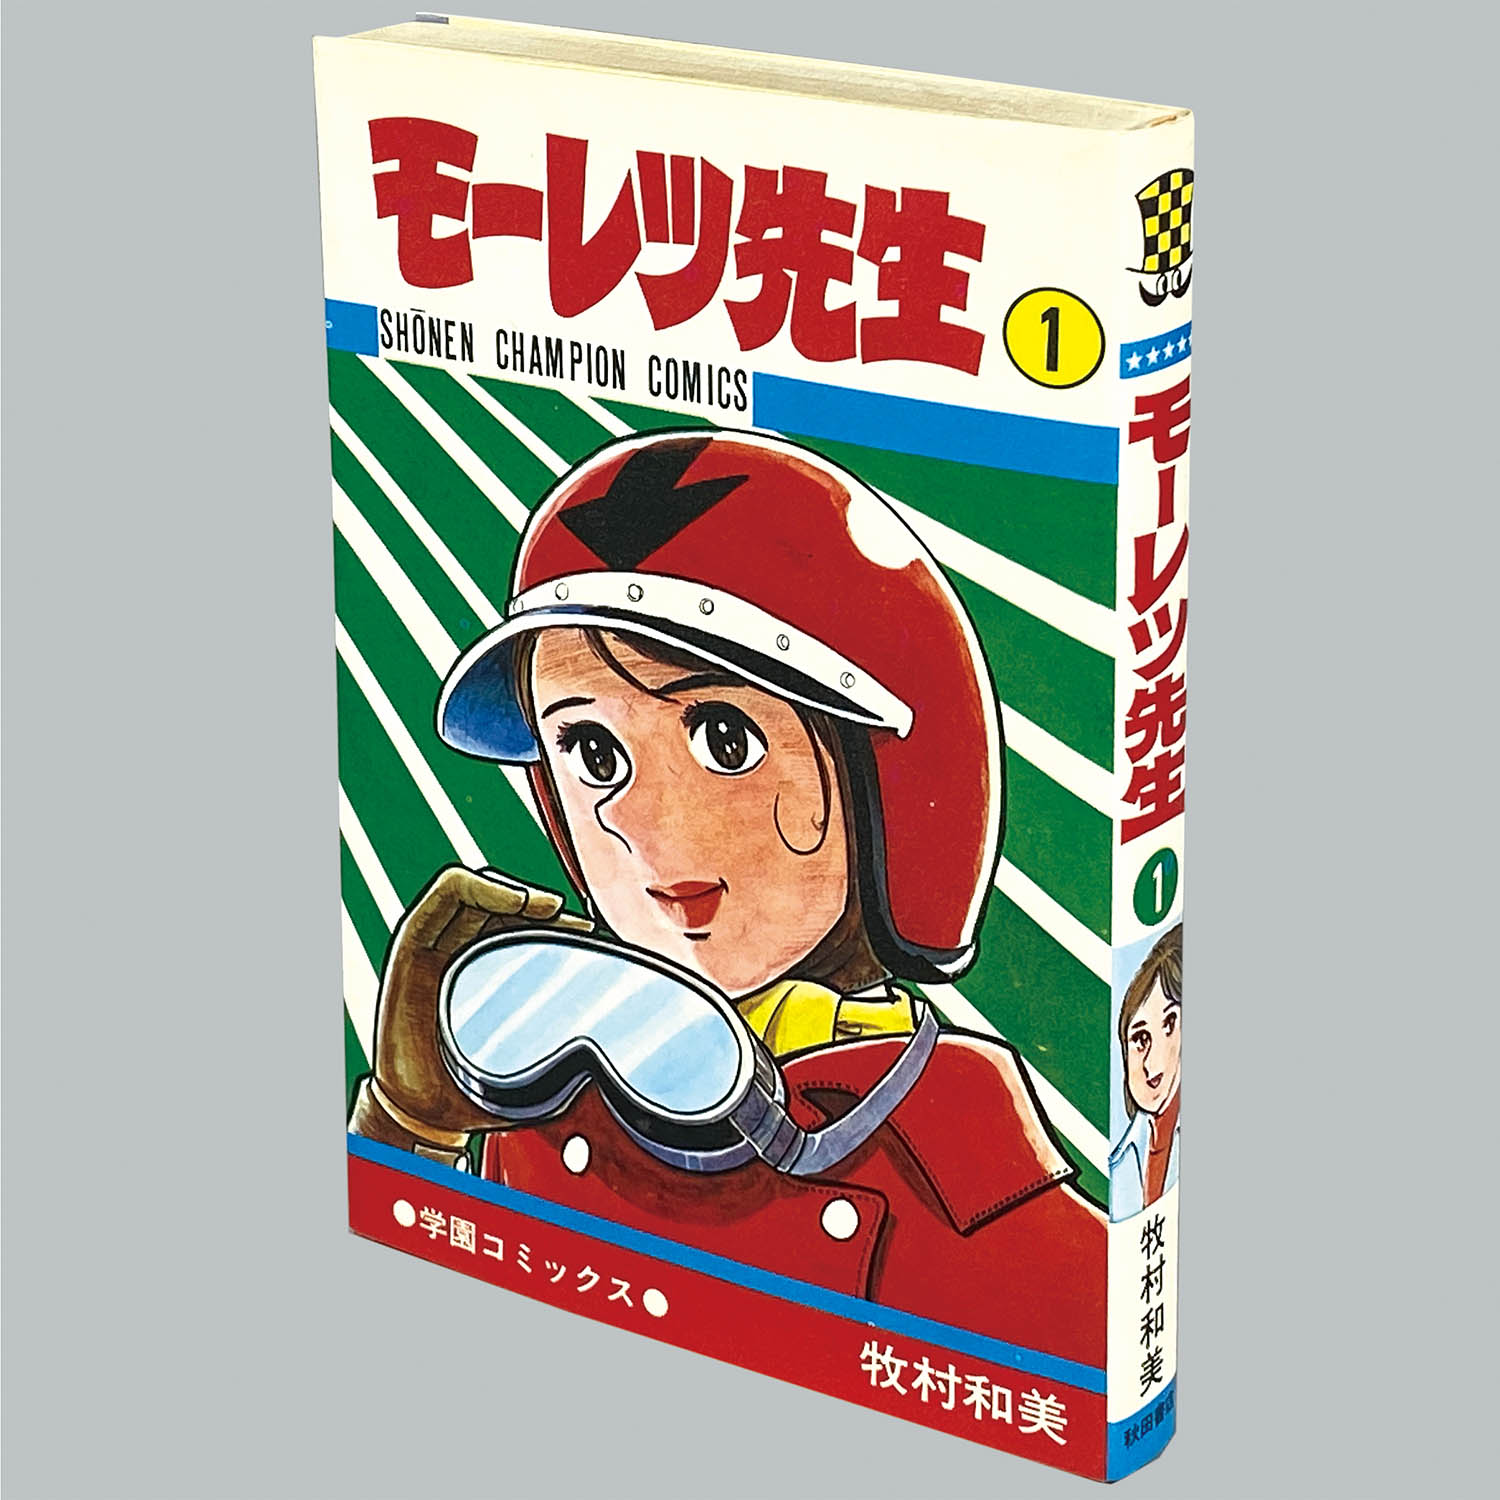 8519] 少年チャンピオンコミックス/牧村和美「モーレツ先生 1巻 初版」